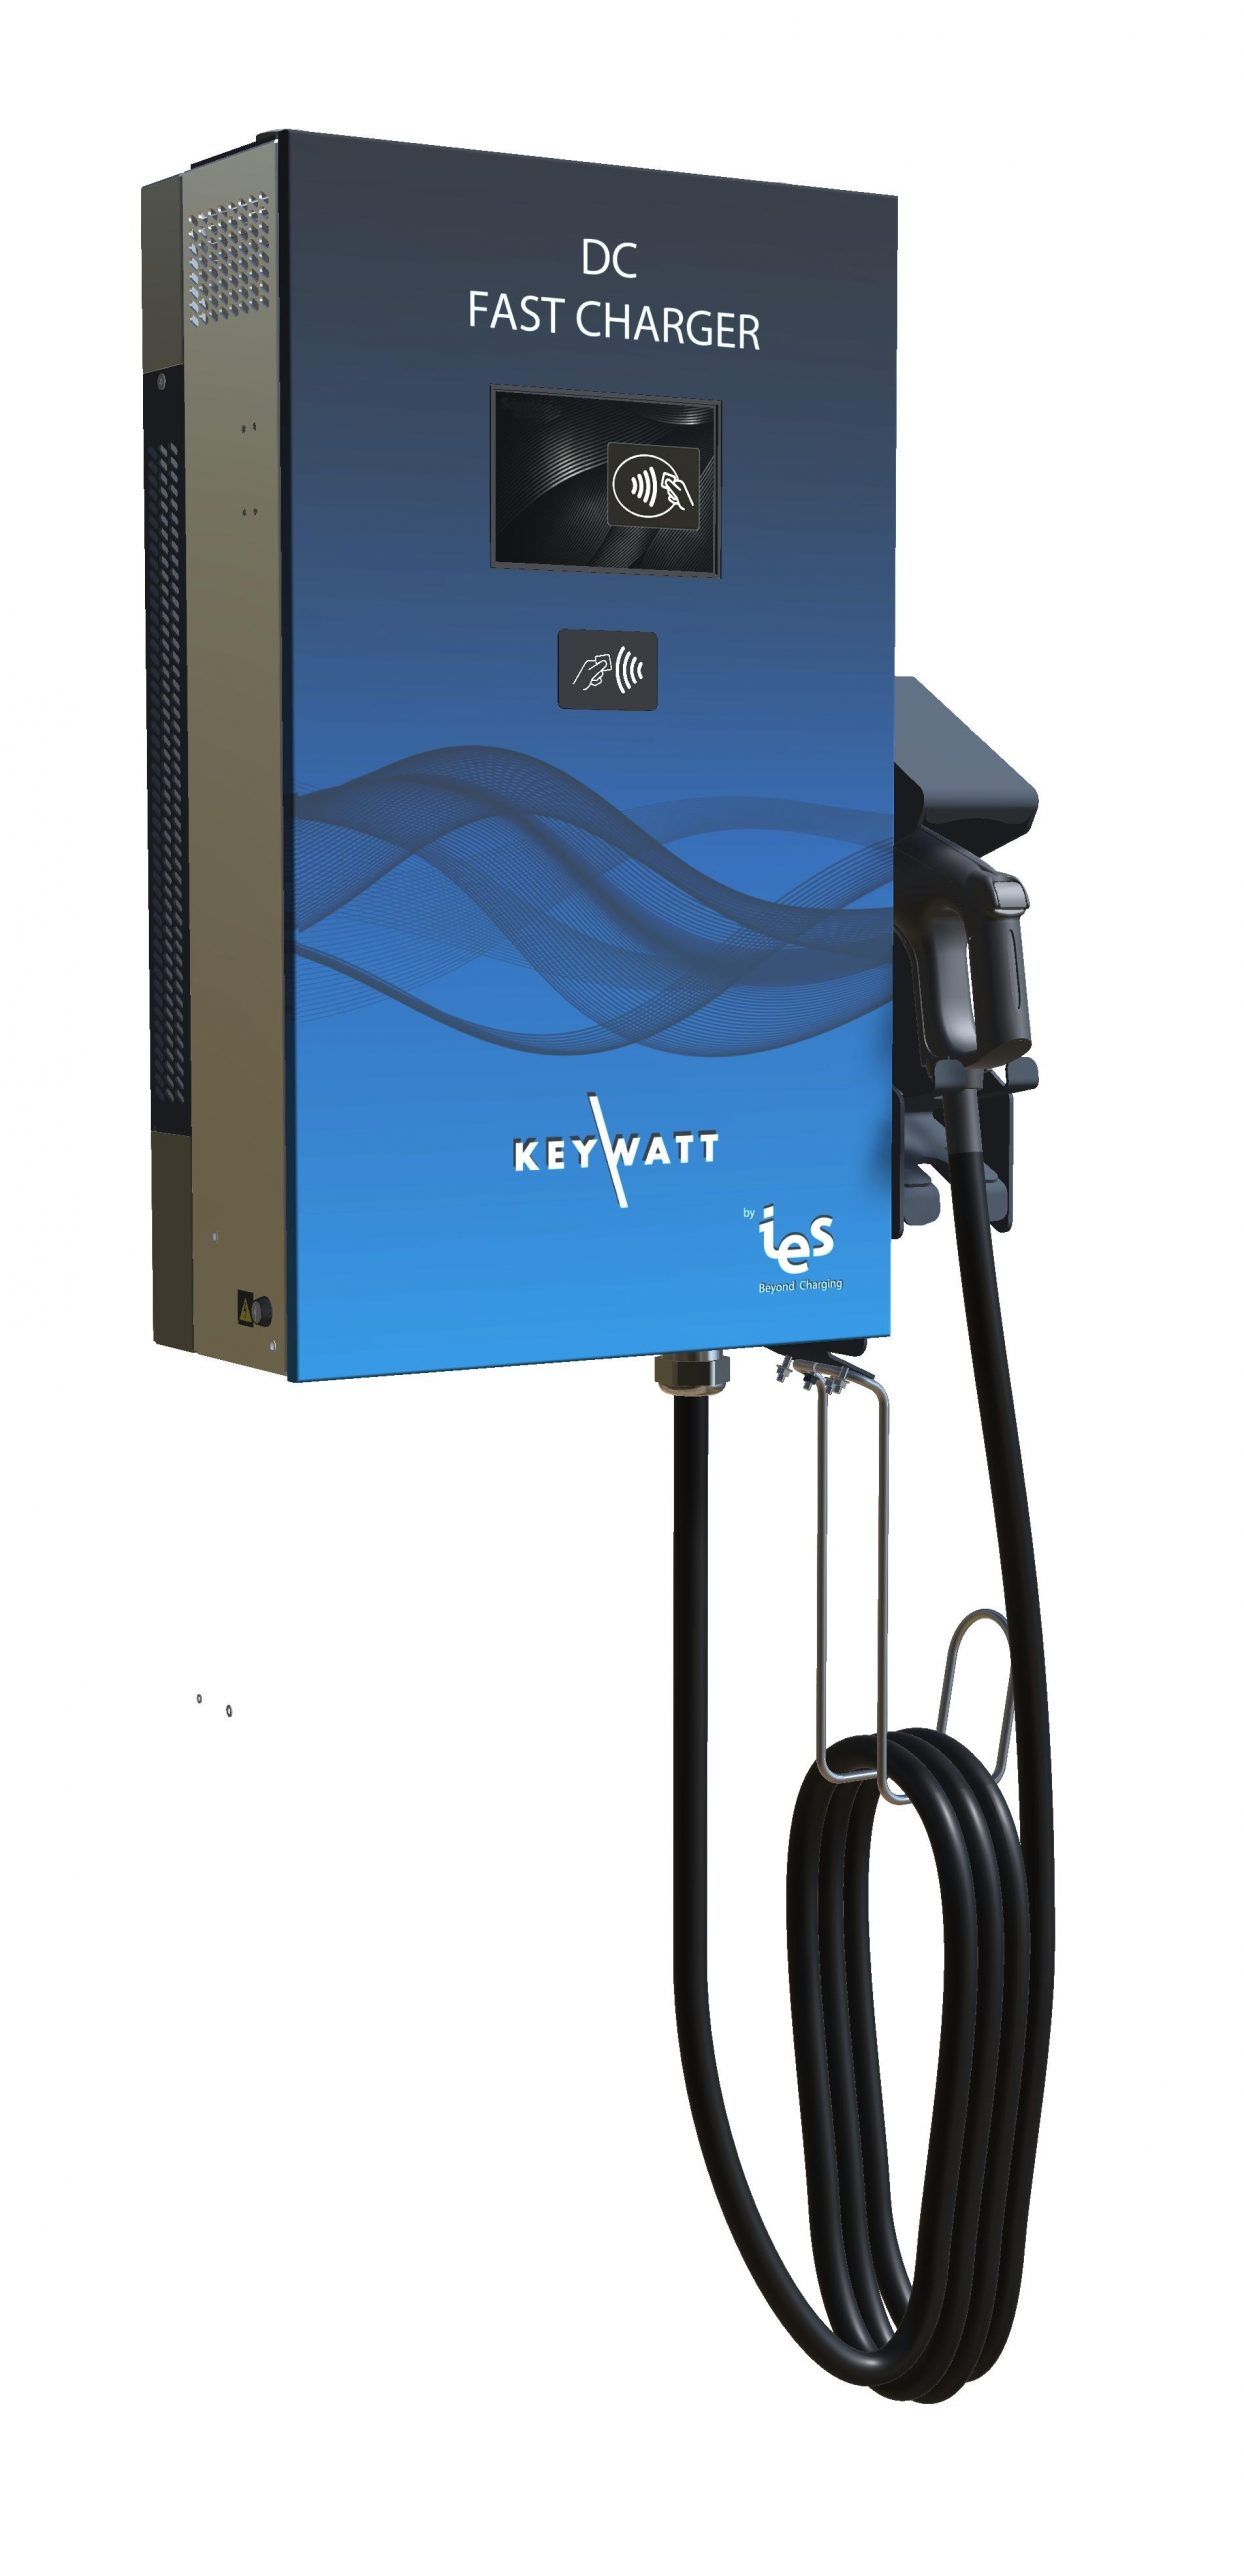 Keywatt® 24 wallbox bornes de recharge pour voiture electrique - ies sysems -_0